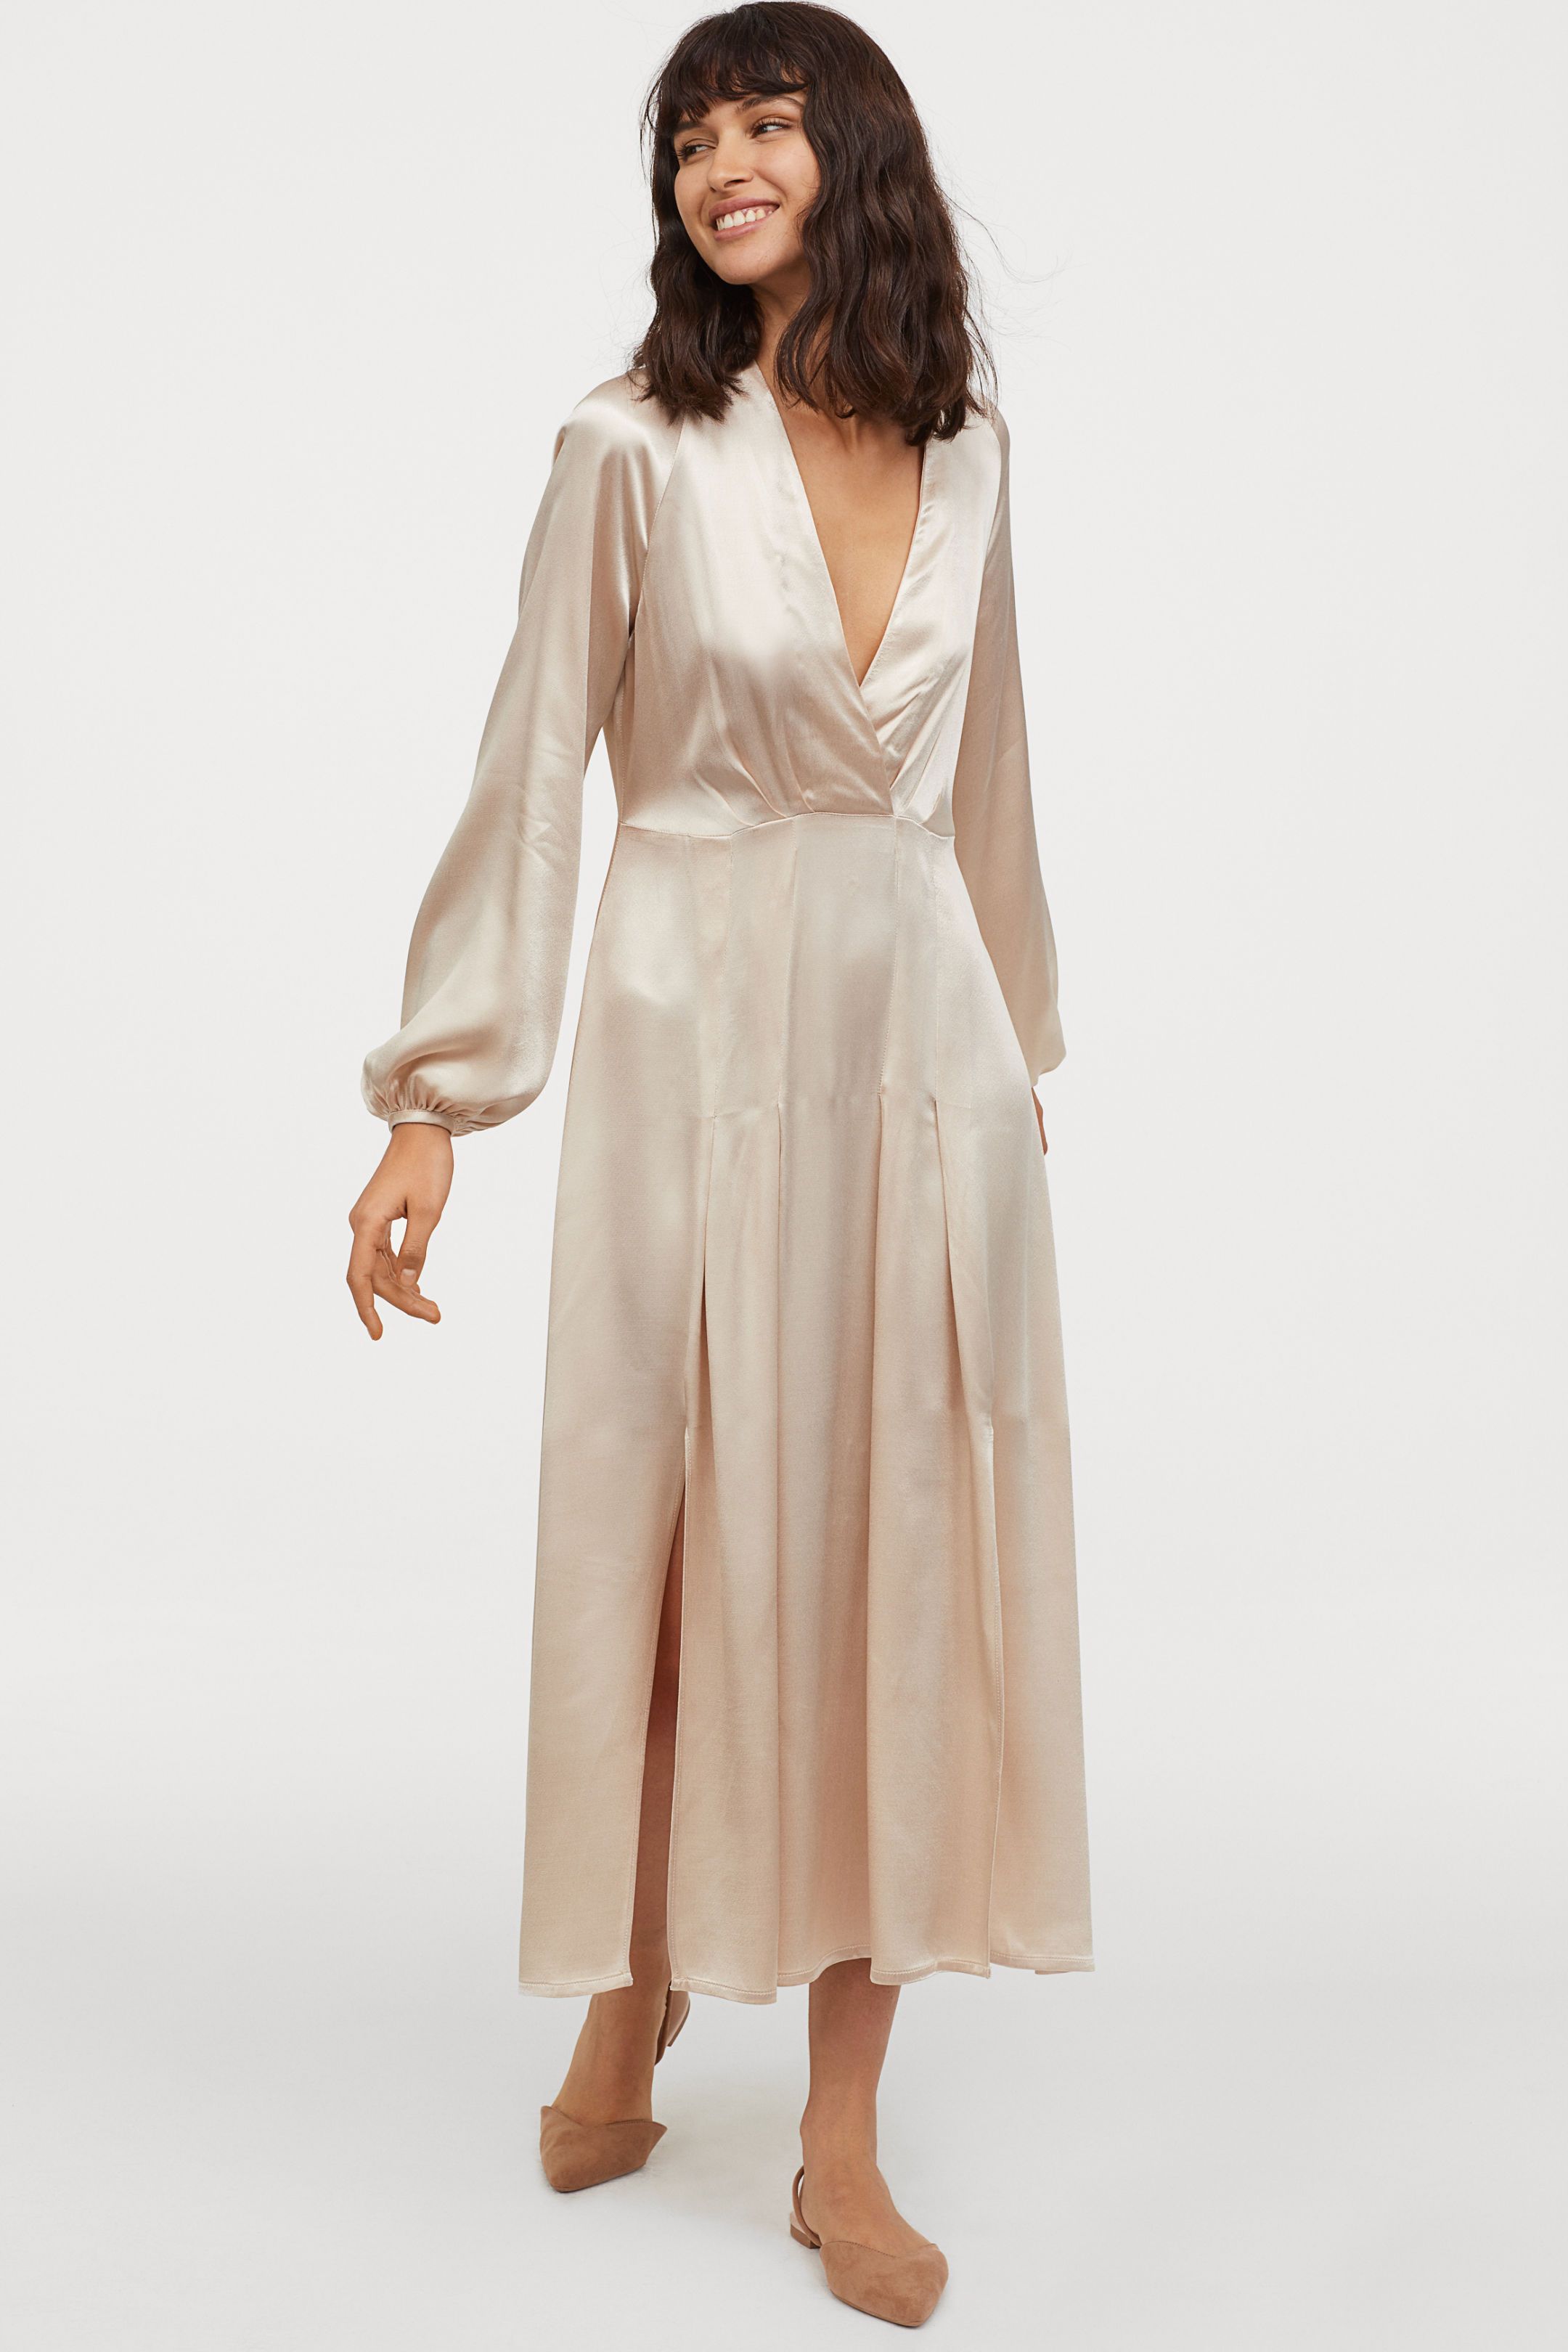 Vestido de novia de H&M que cuesta 60 euros - H&M vende un de novia low-cost que te va a enamorar